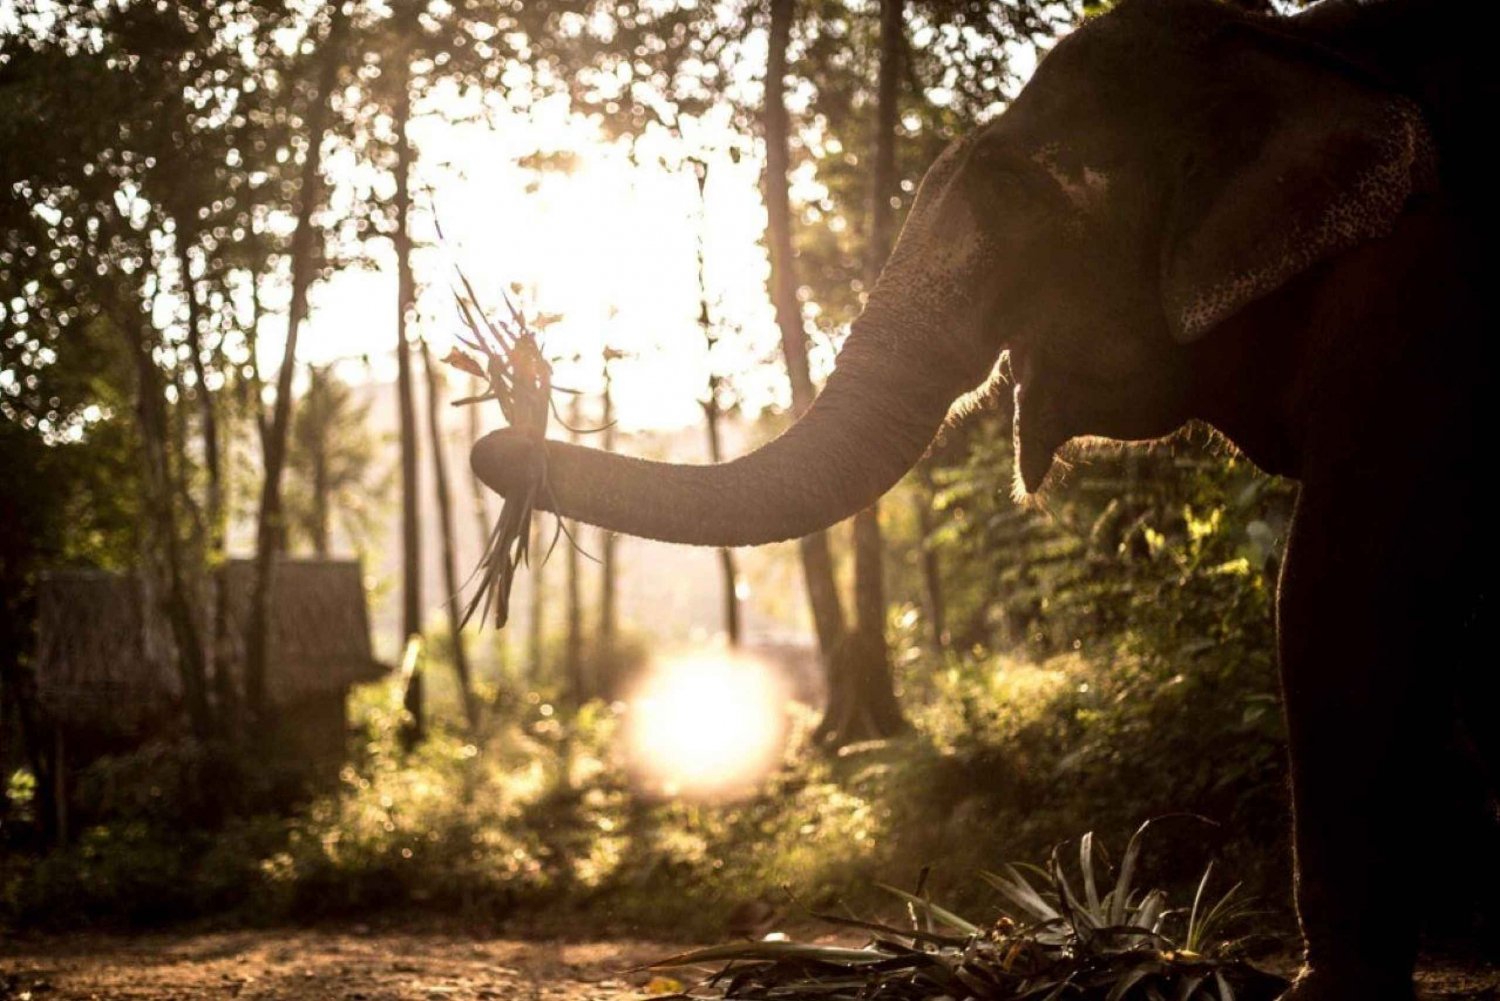 Phuket: Unique Dusk Ethical Elephant Sanctuary Experience